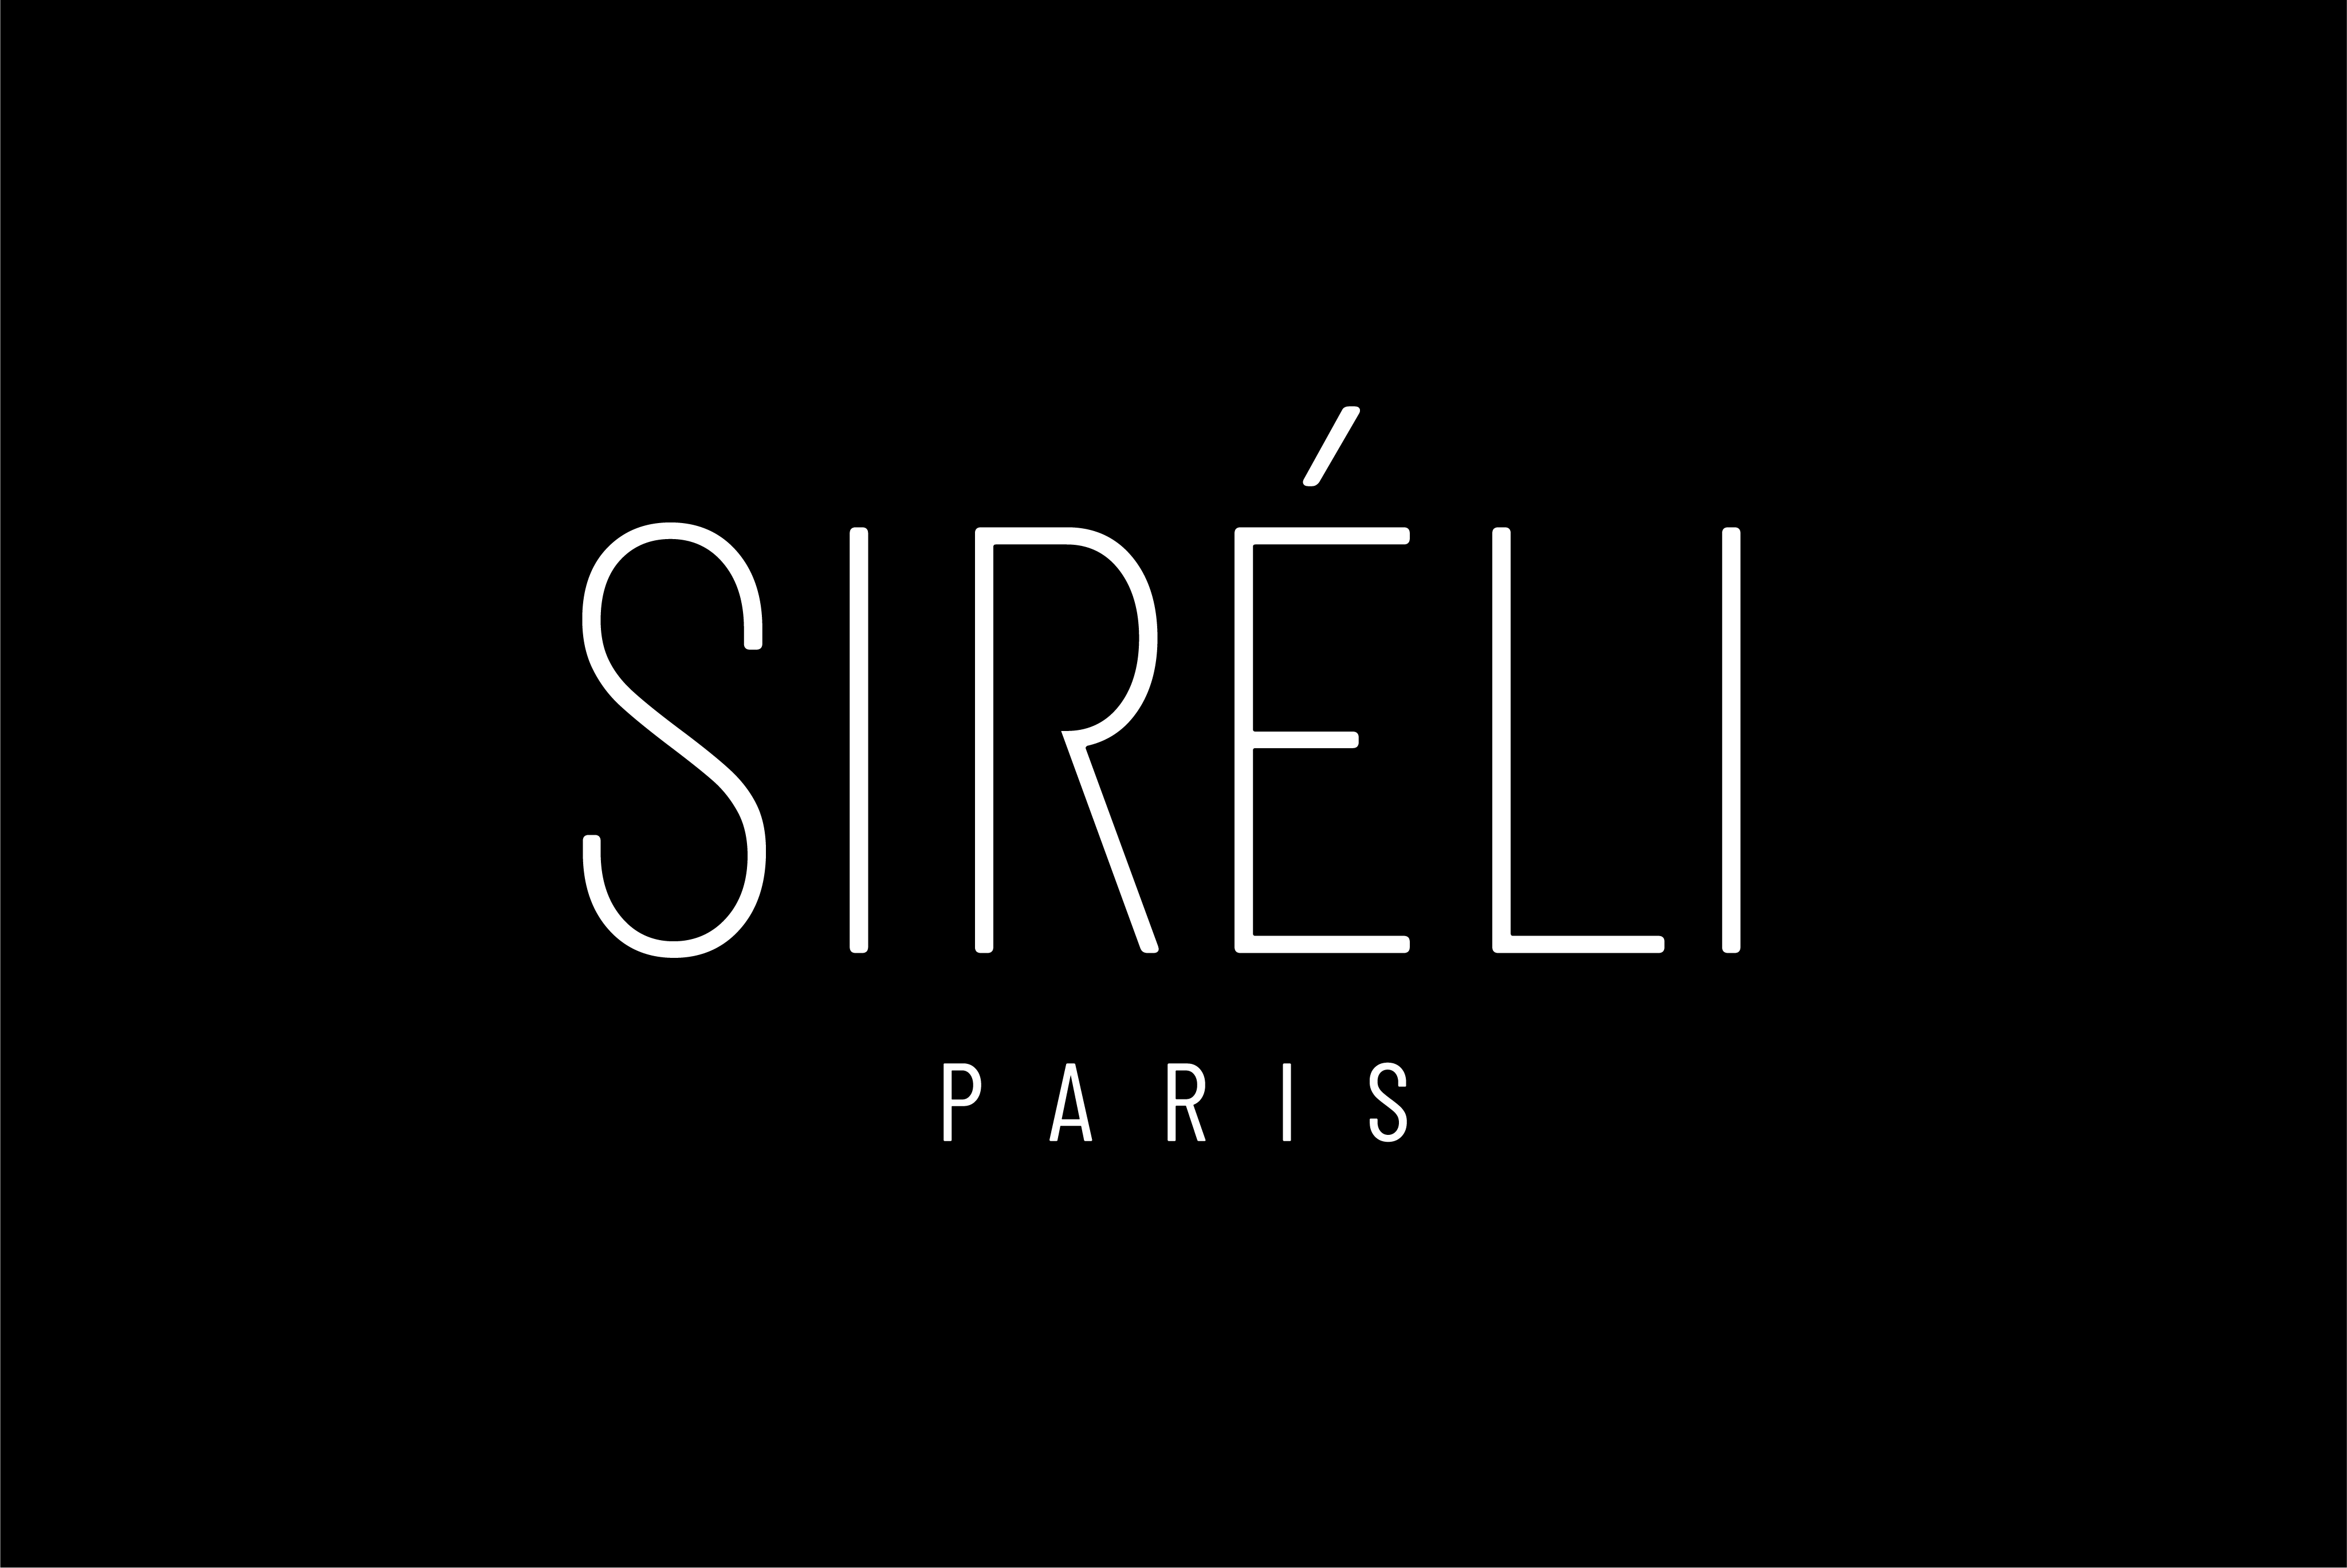 PR Sireli Paris